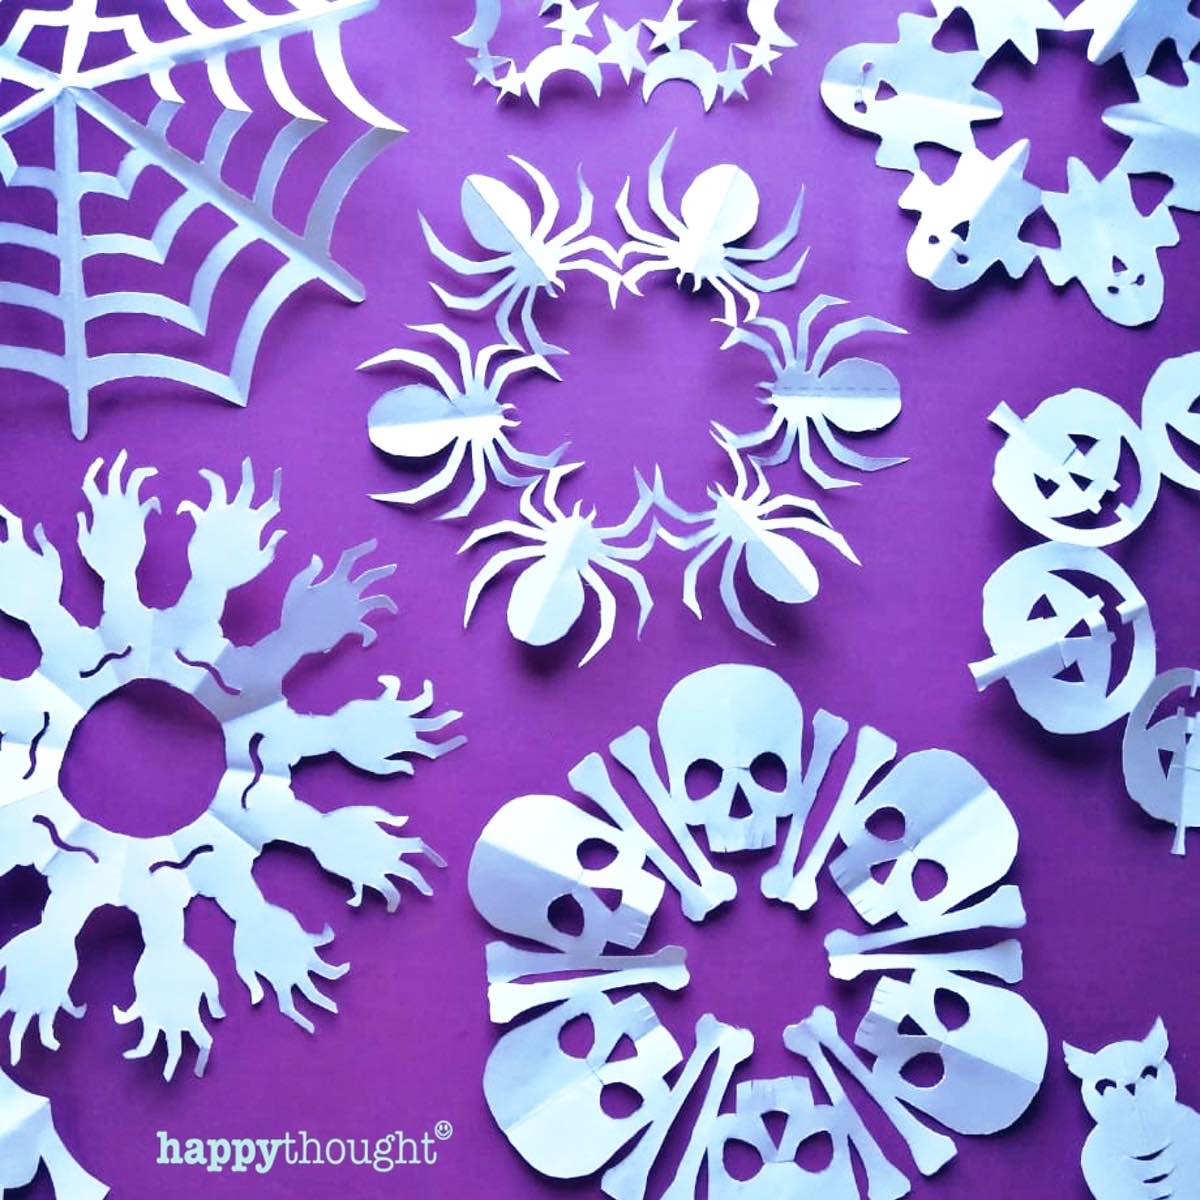 Spooky and cute Halloween kirigami pattern ideas skulls bones pumpkins freaky hands